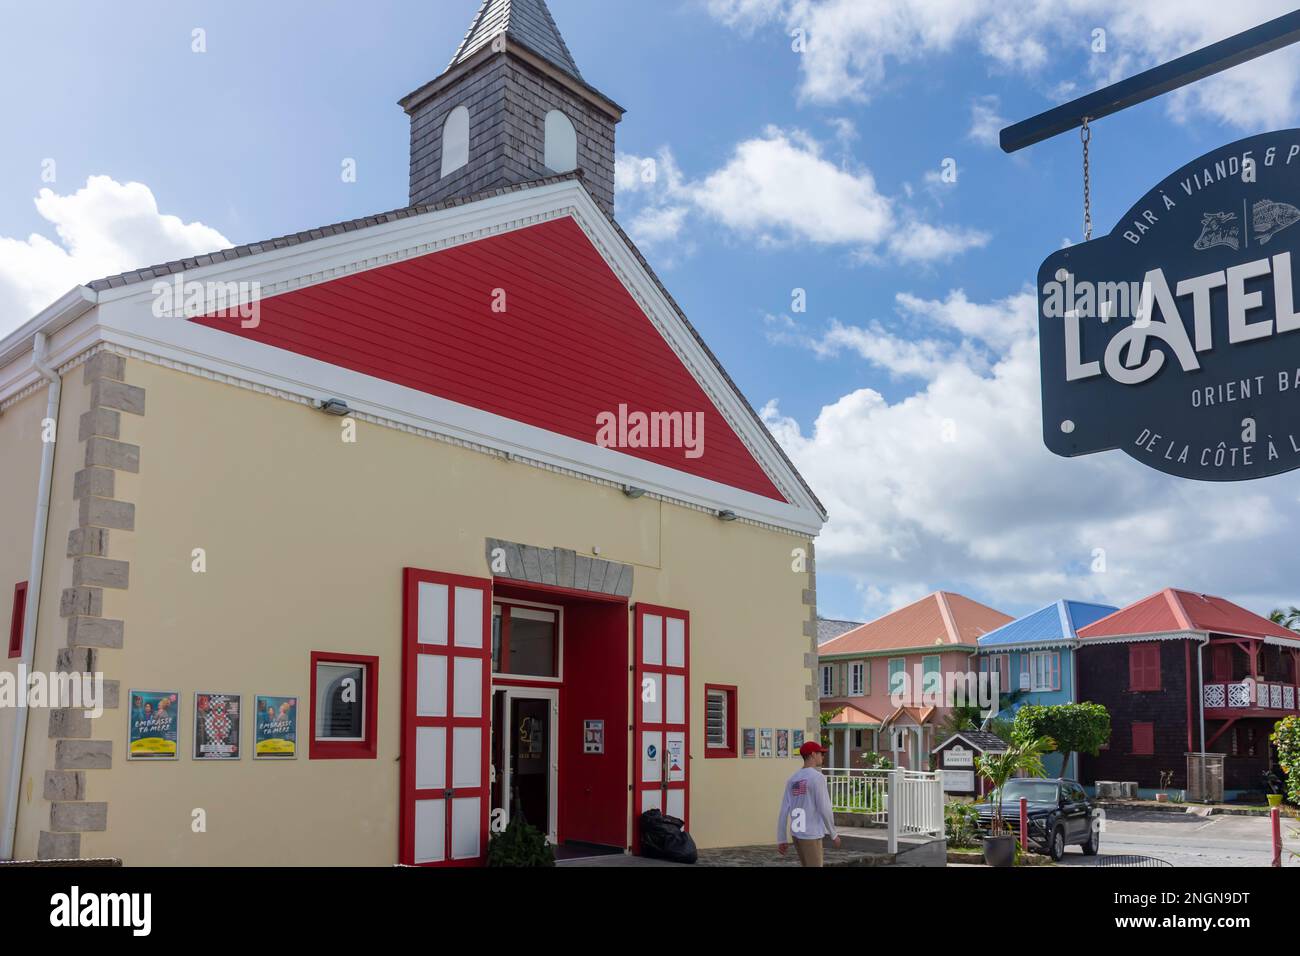 Théâtre La Chapelle (Chapel Arts Theatre), Orient Bay (Baie Orientale), St Martin (Saint-Martin), Lesser Antilles, Caribbean Stock Photo